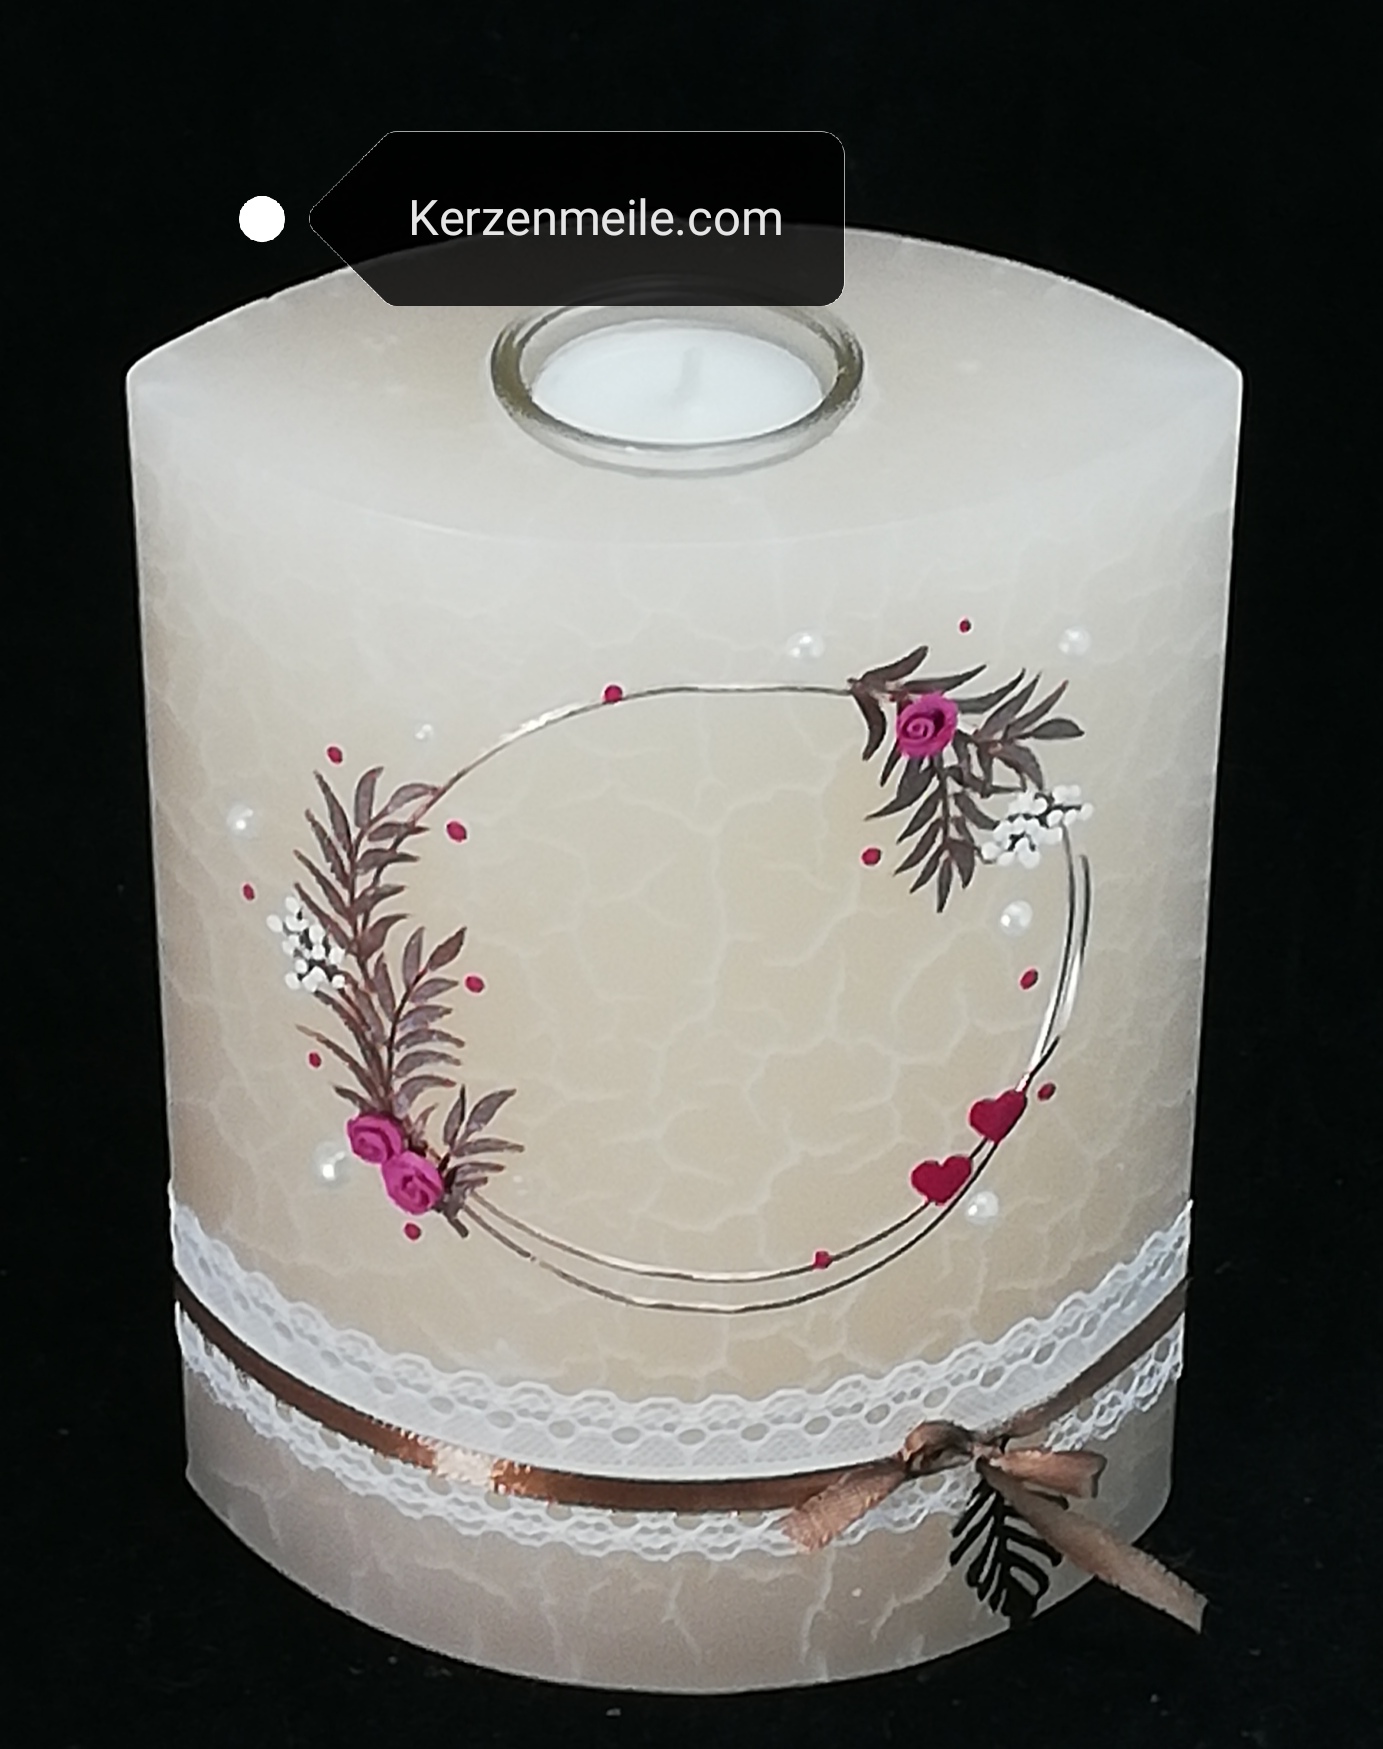 Vintage-Hochzeitskerze mit Blätterkranz, Rosen und Spitzenband